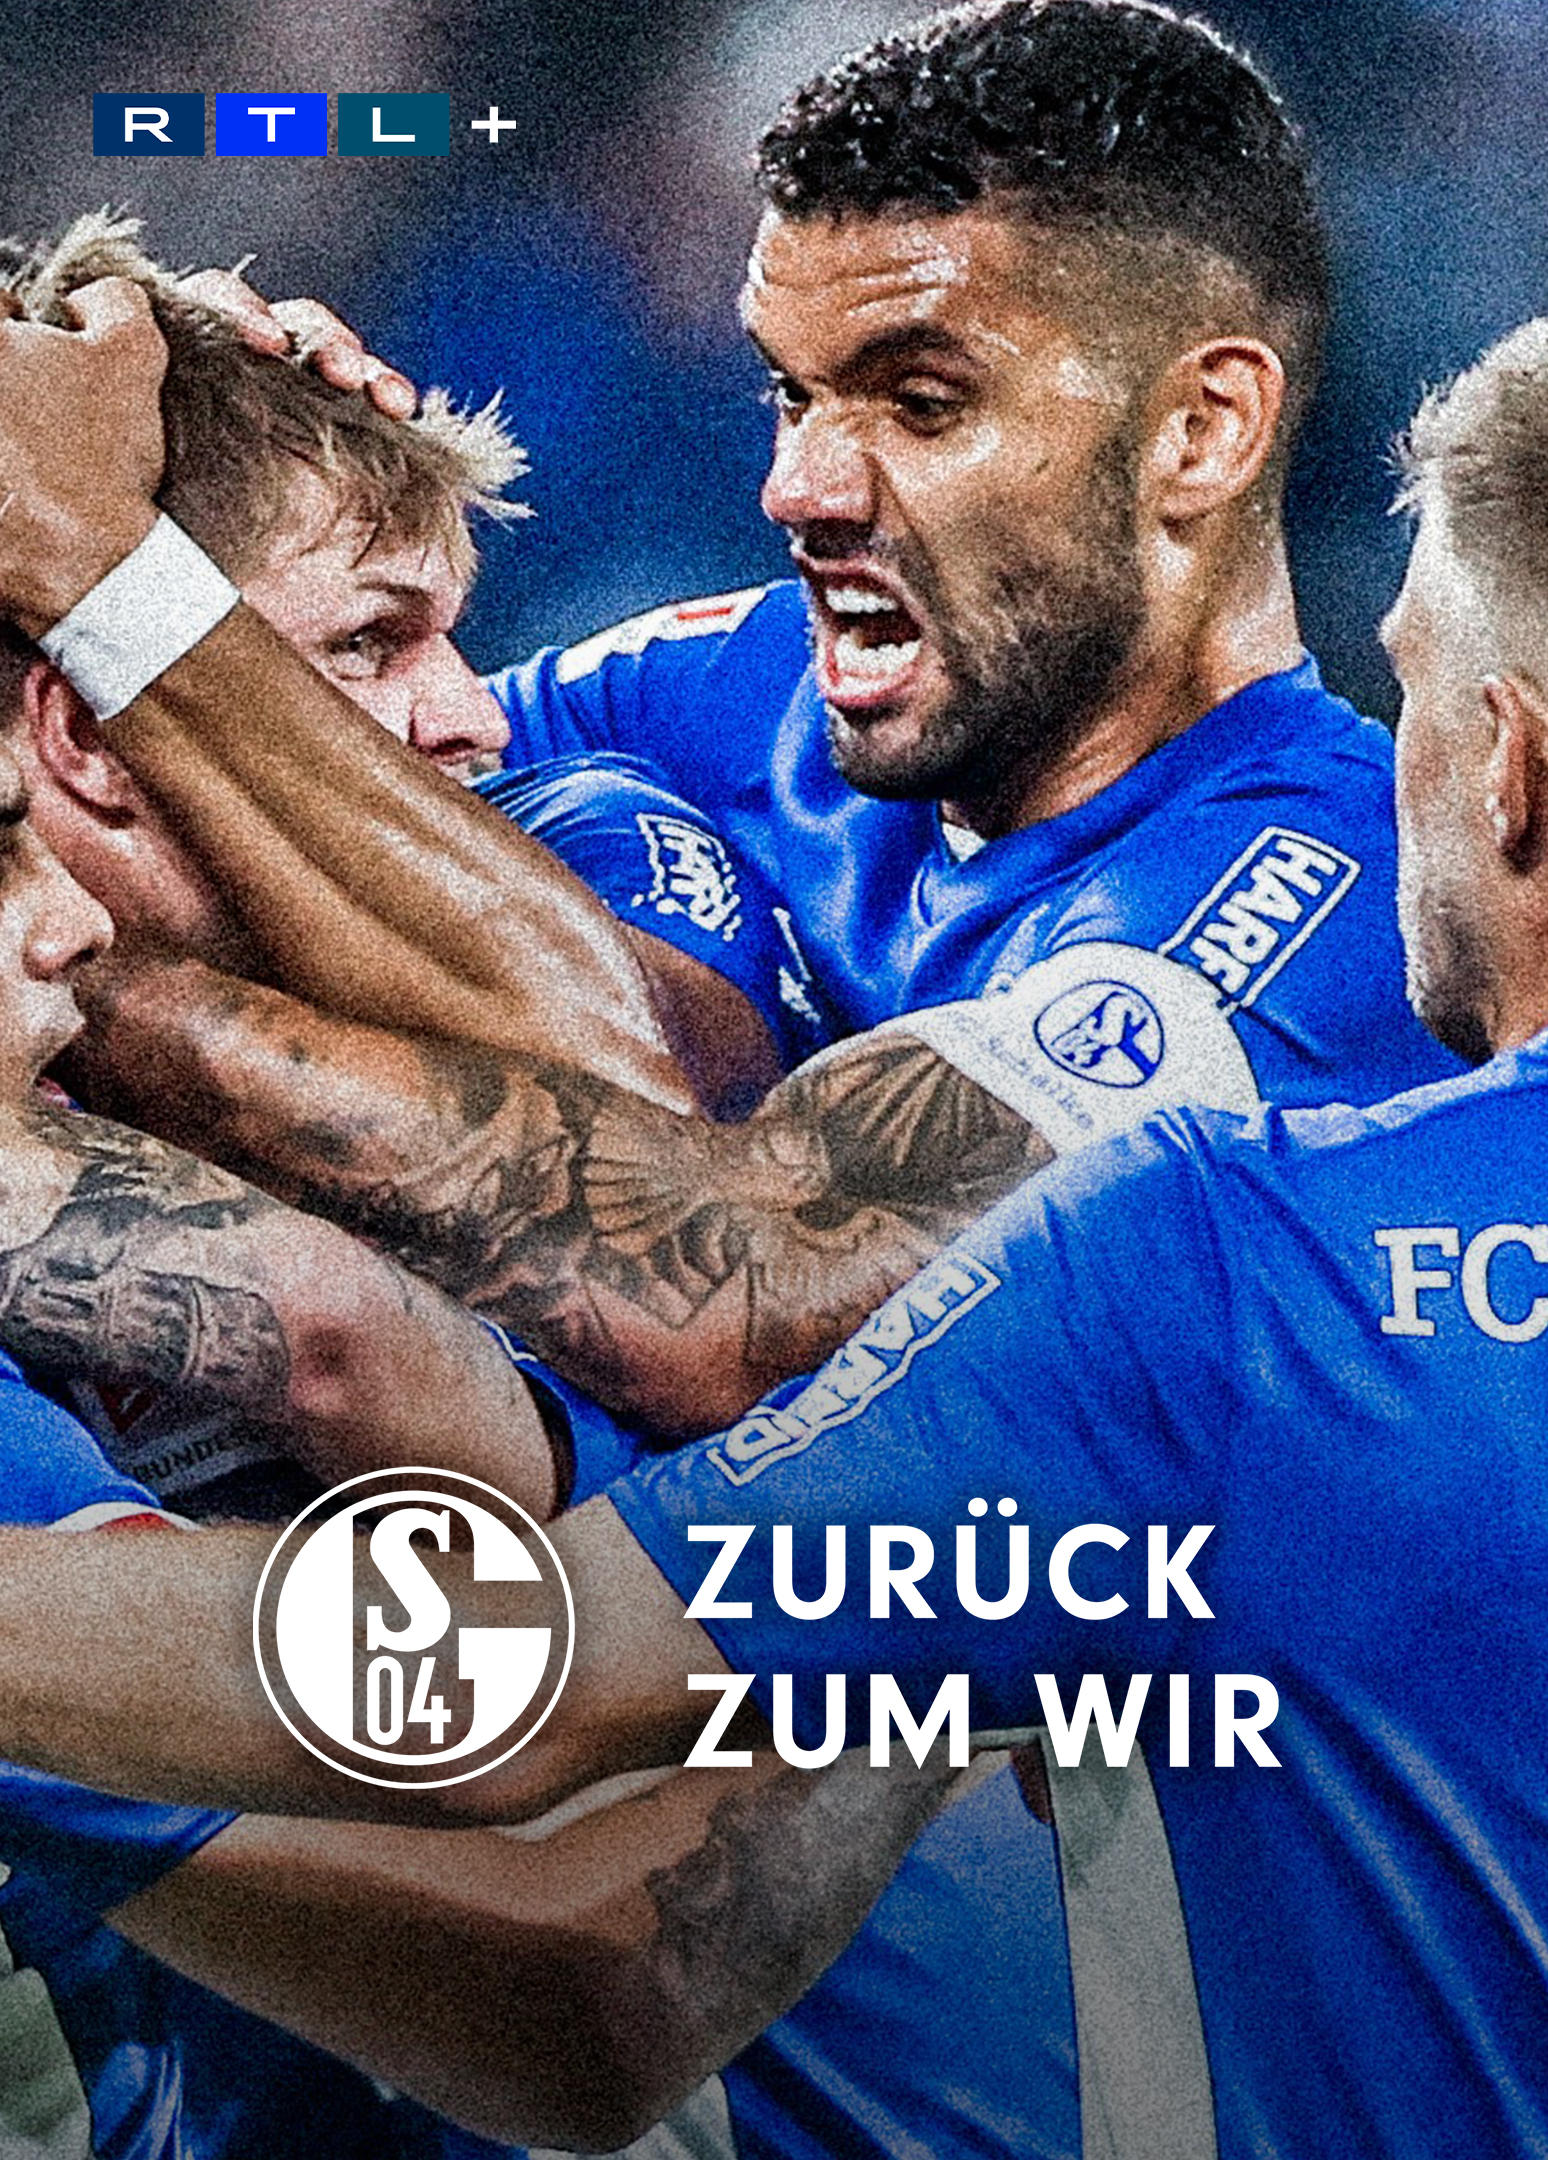 Schalke 04 - Zurück zum Wir